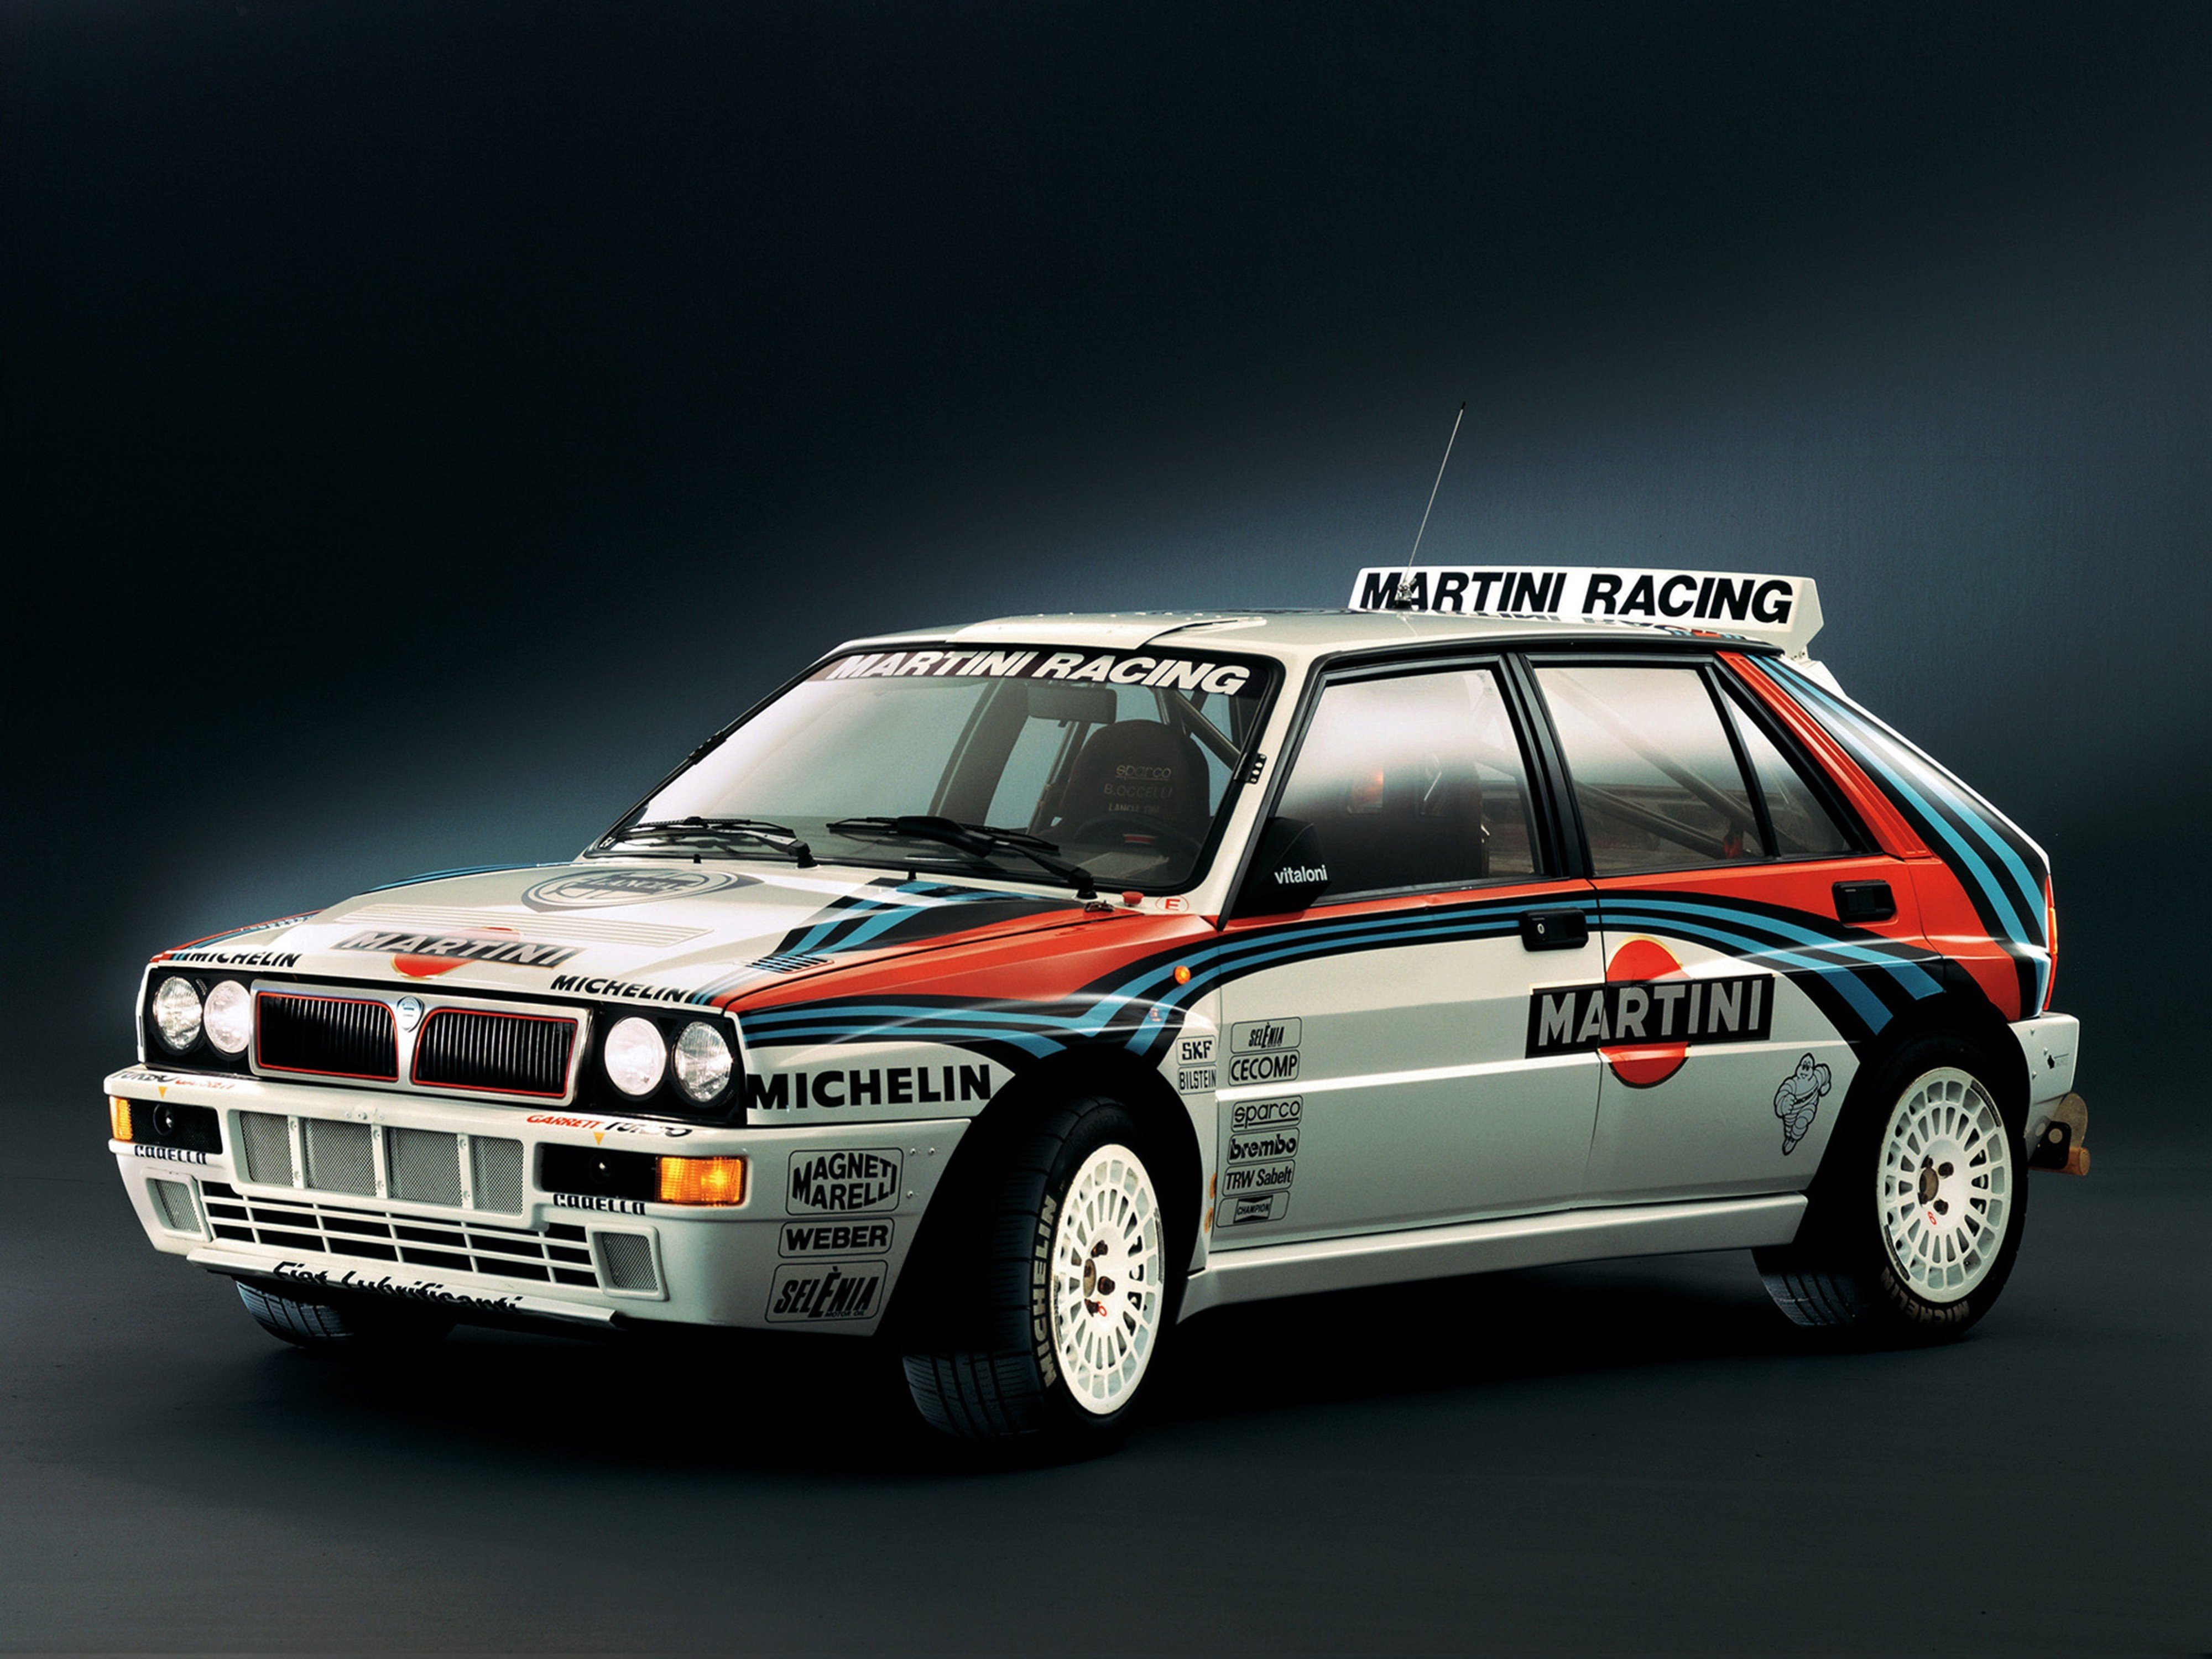 1992, Lancia delta hf, Integrale, Evoluzione, Race, Car, Racing, Rally, Martini, Italy, 4000x3000 Wallpaper